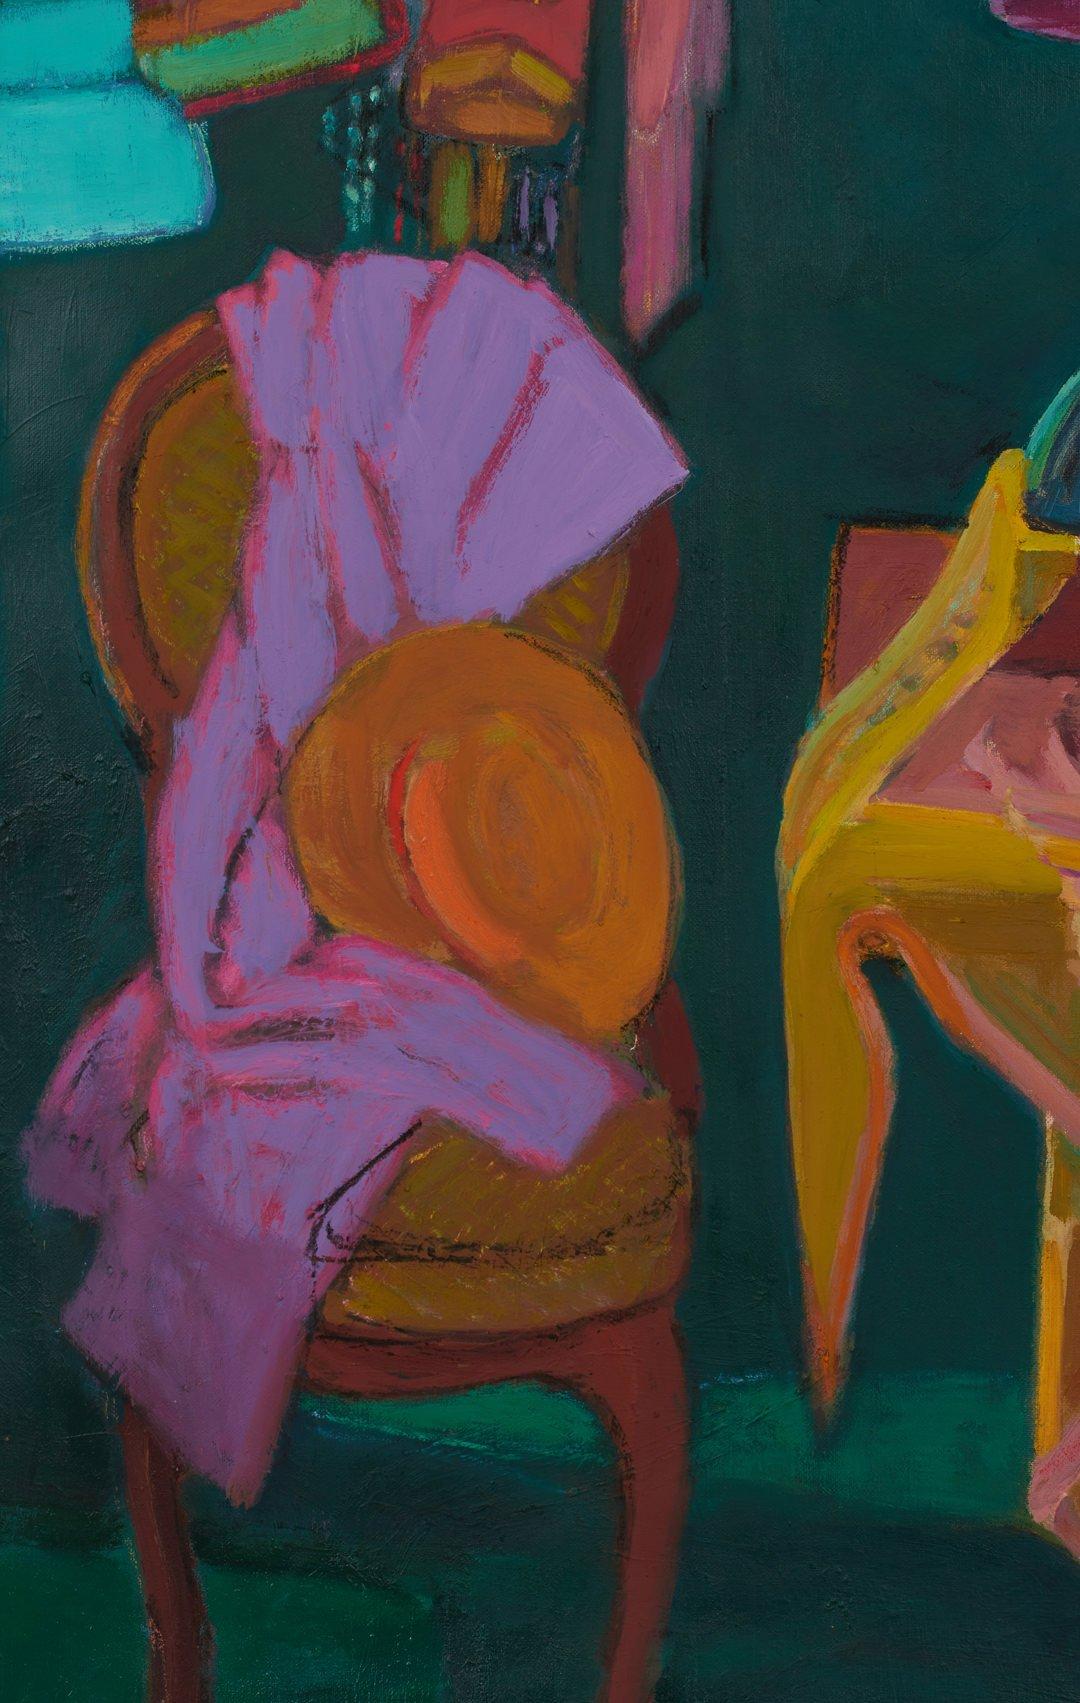 Chapeaux, scène de nature morte vivante turquoise, rose et violette du XXIe siècle - Post-impressionnisme Painting par Joseph O'Sickey